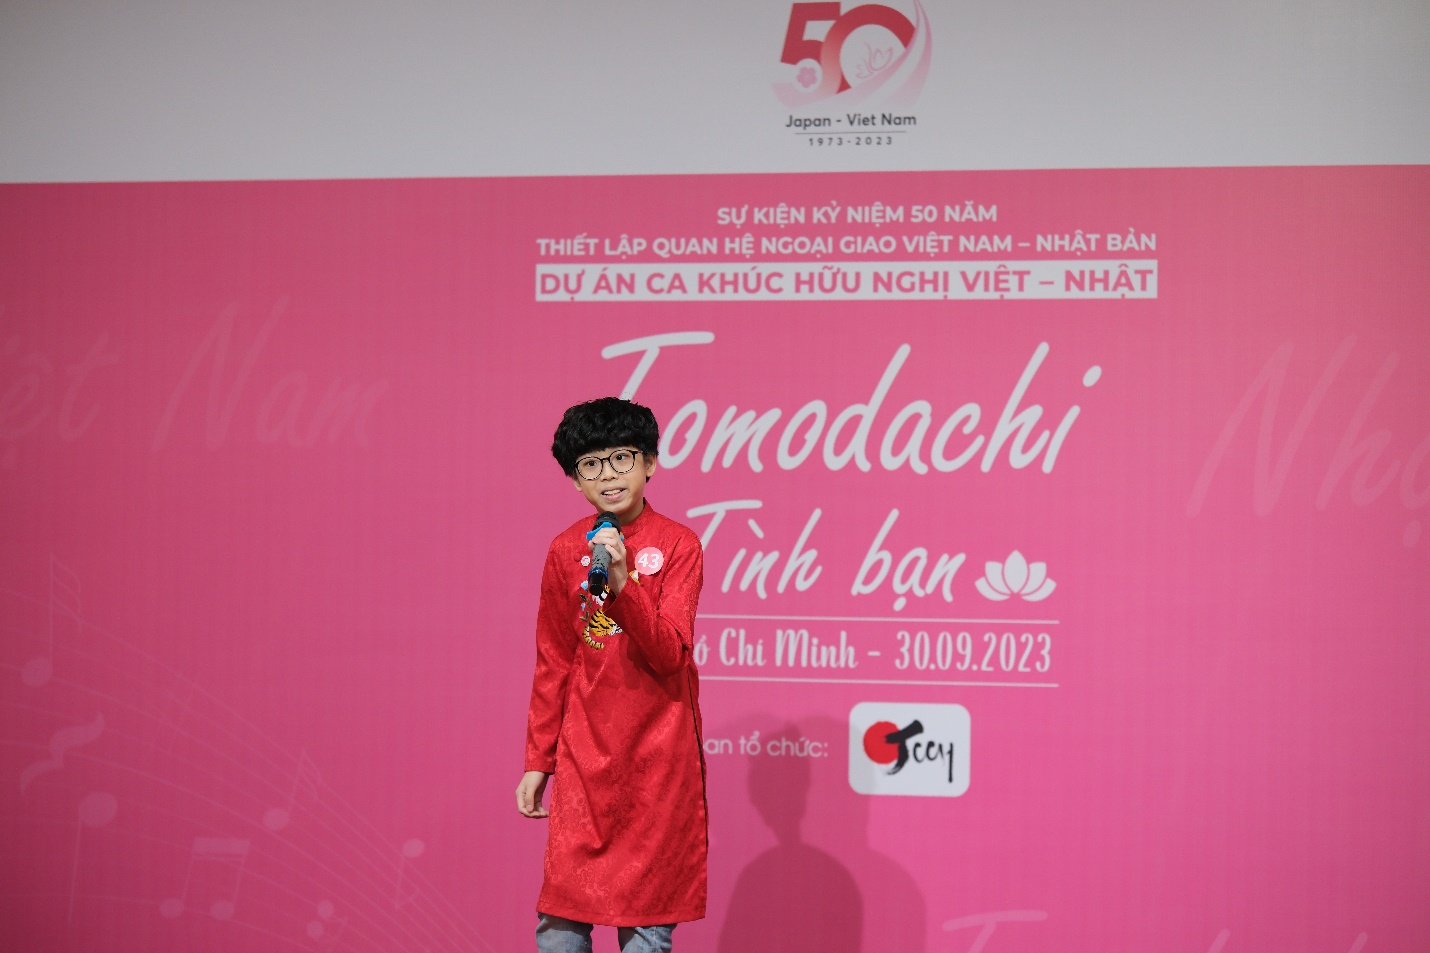 Dự án ca khúc hữu nghị Việt - Nhật “Tomodachi = Tình bạn” khởi động với sự kiện đầu tiên tại TP.HCM - Ảnh 4.